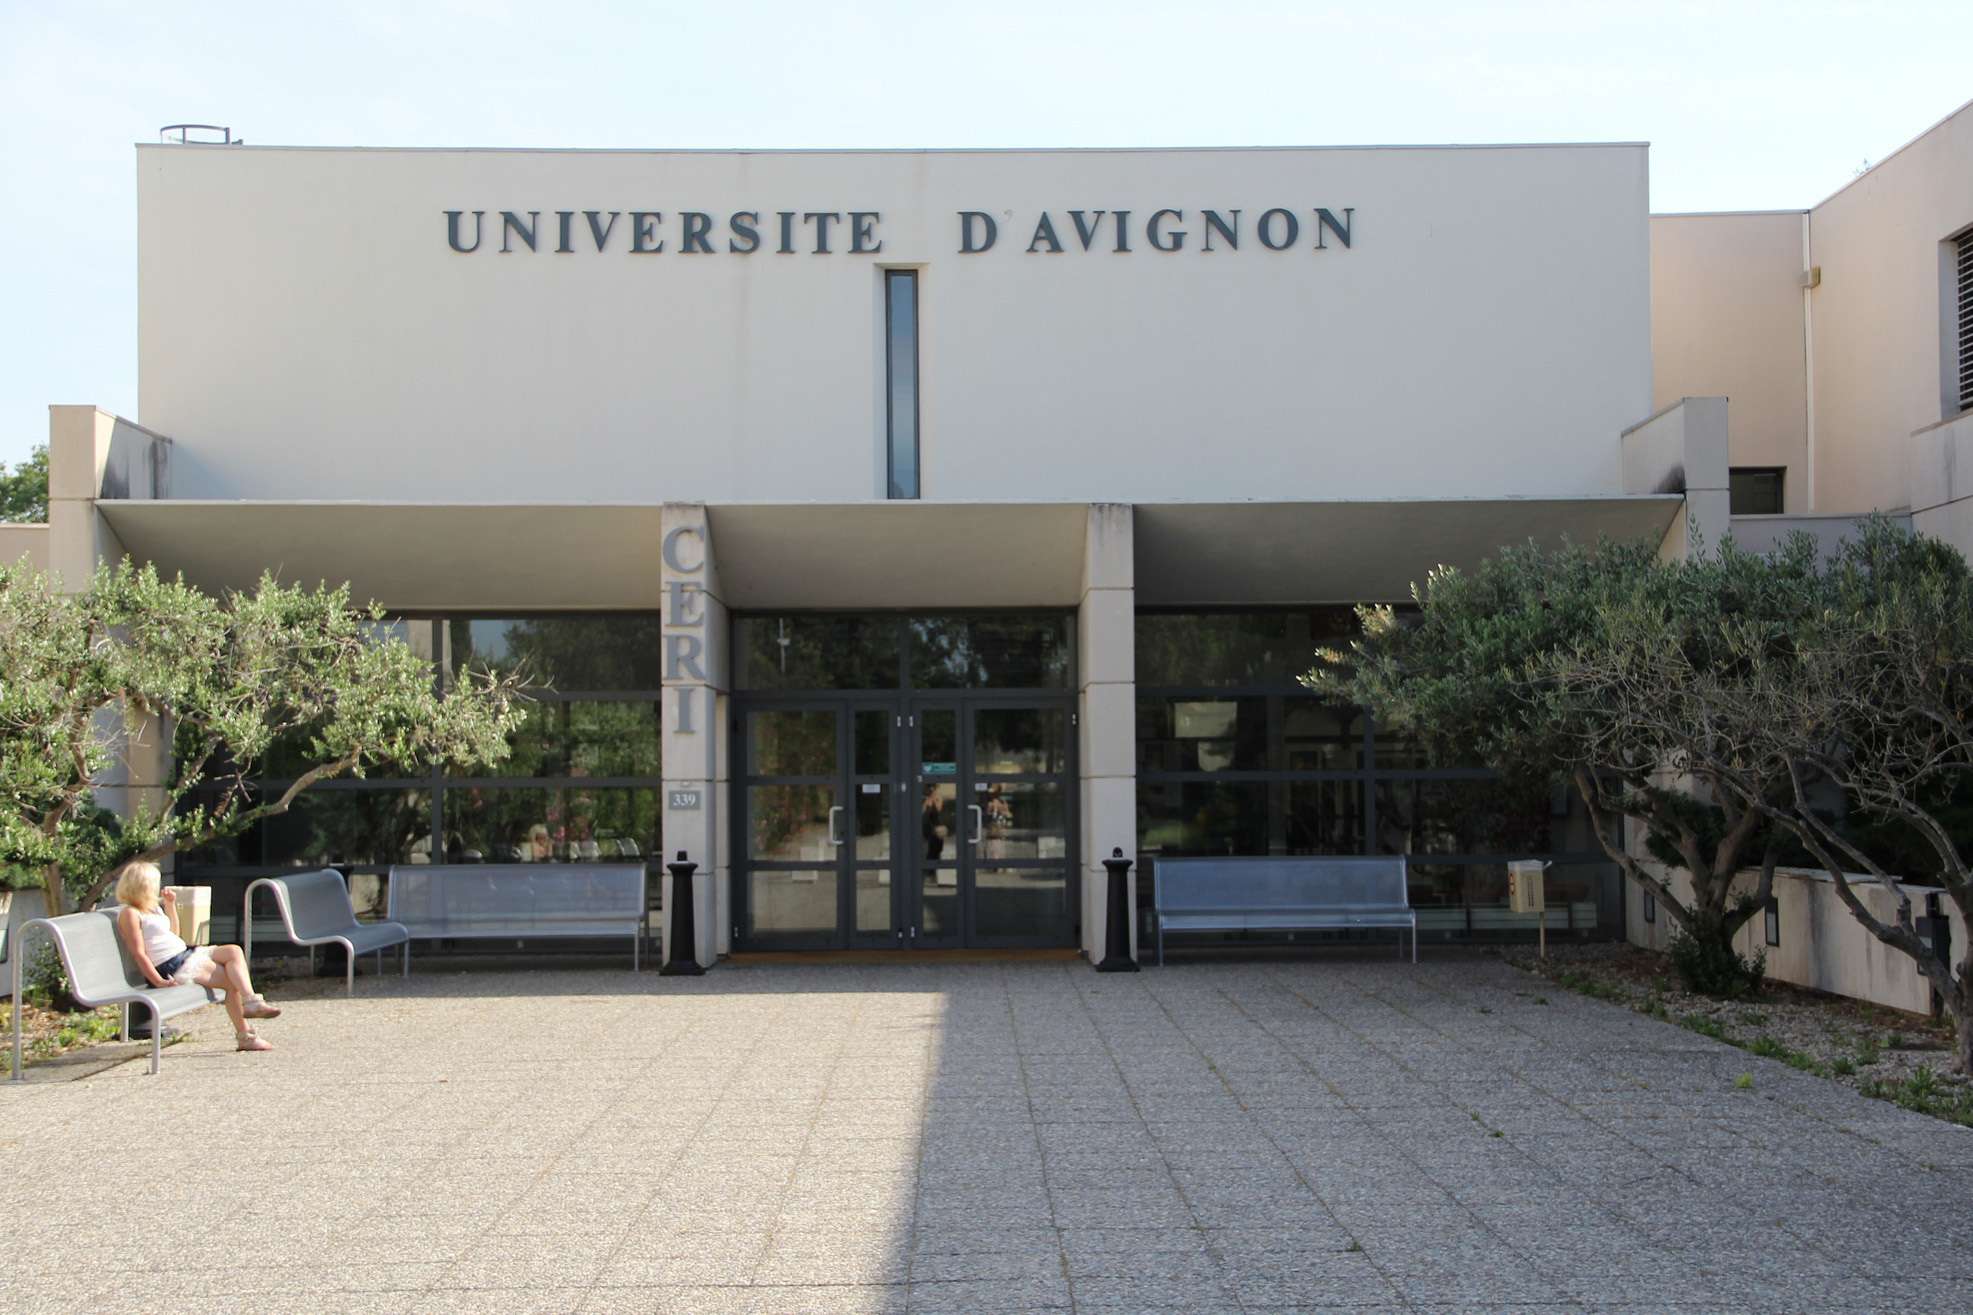 Université dAvignon building